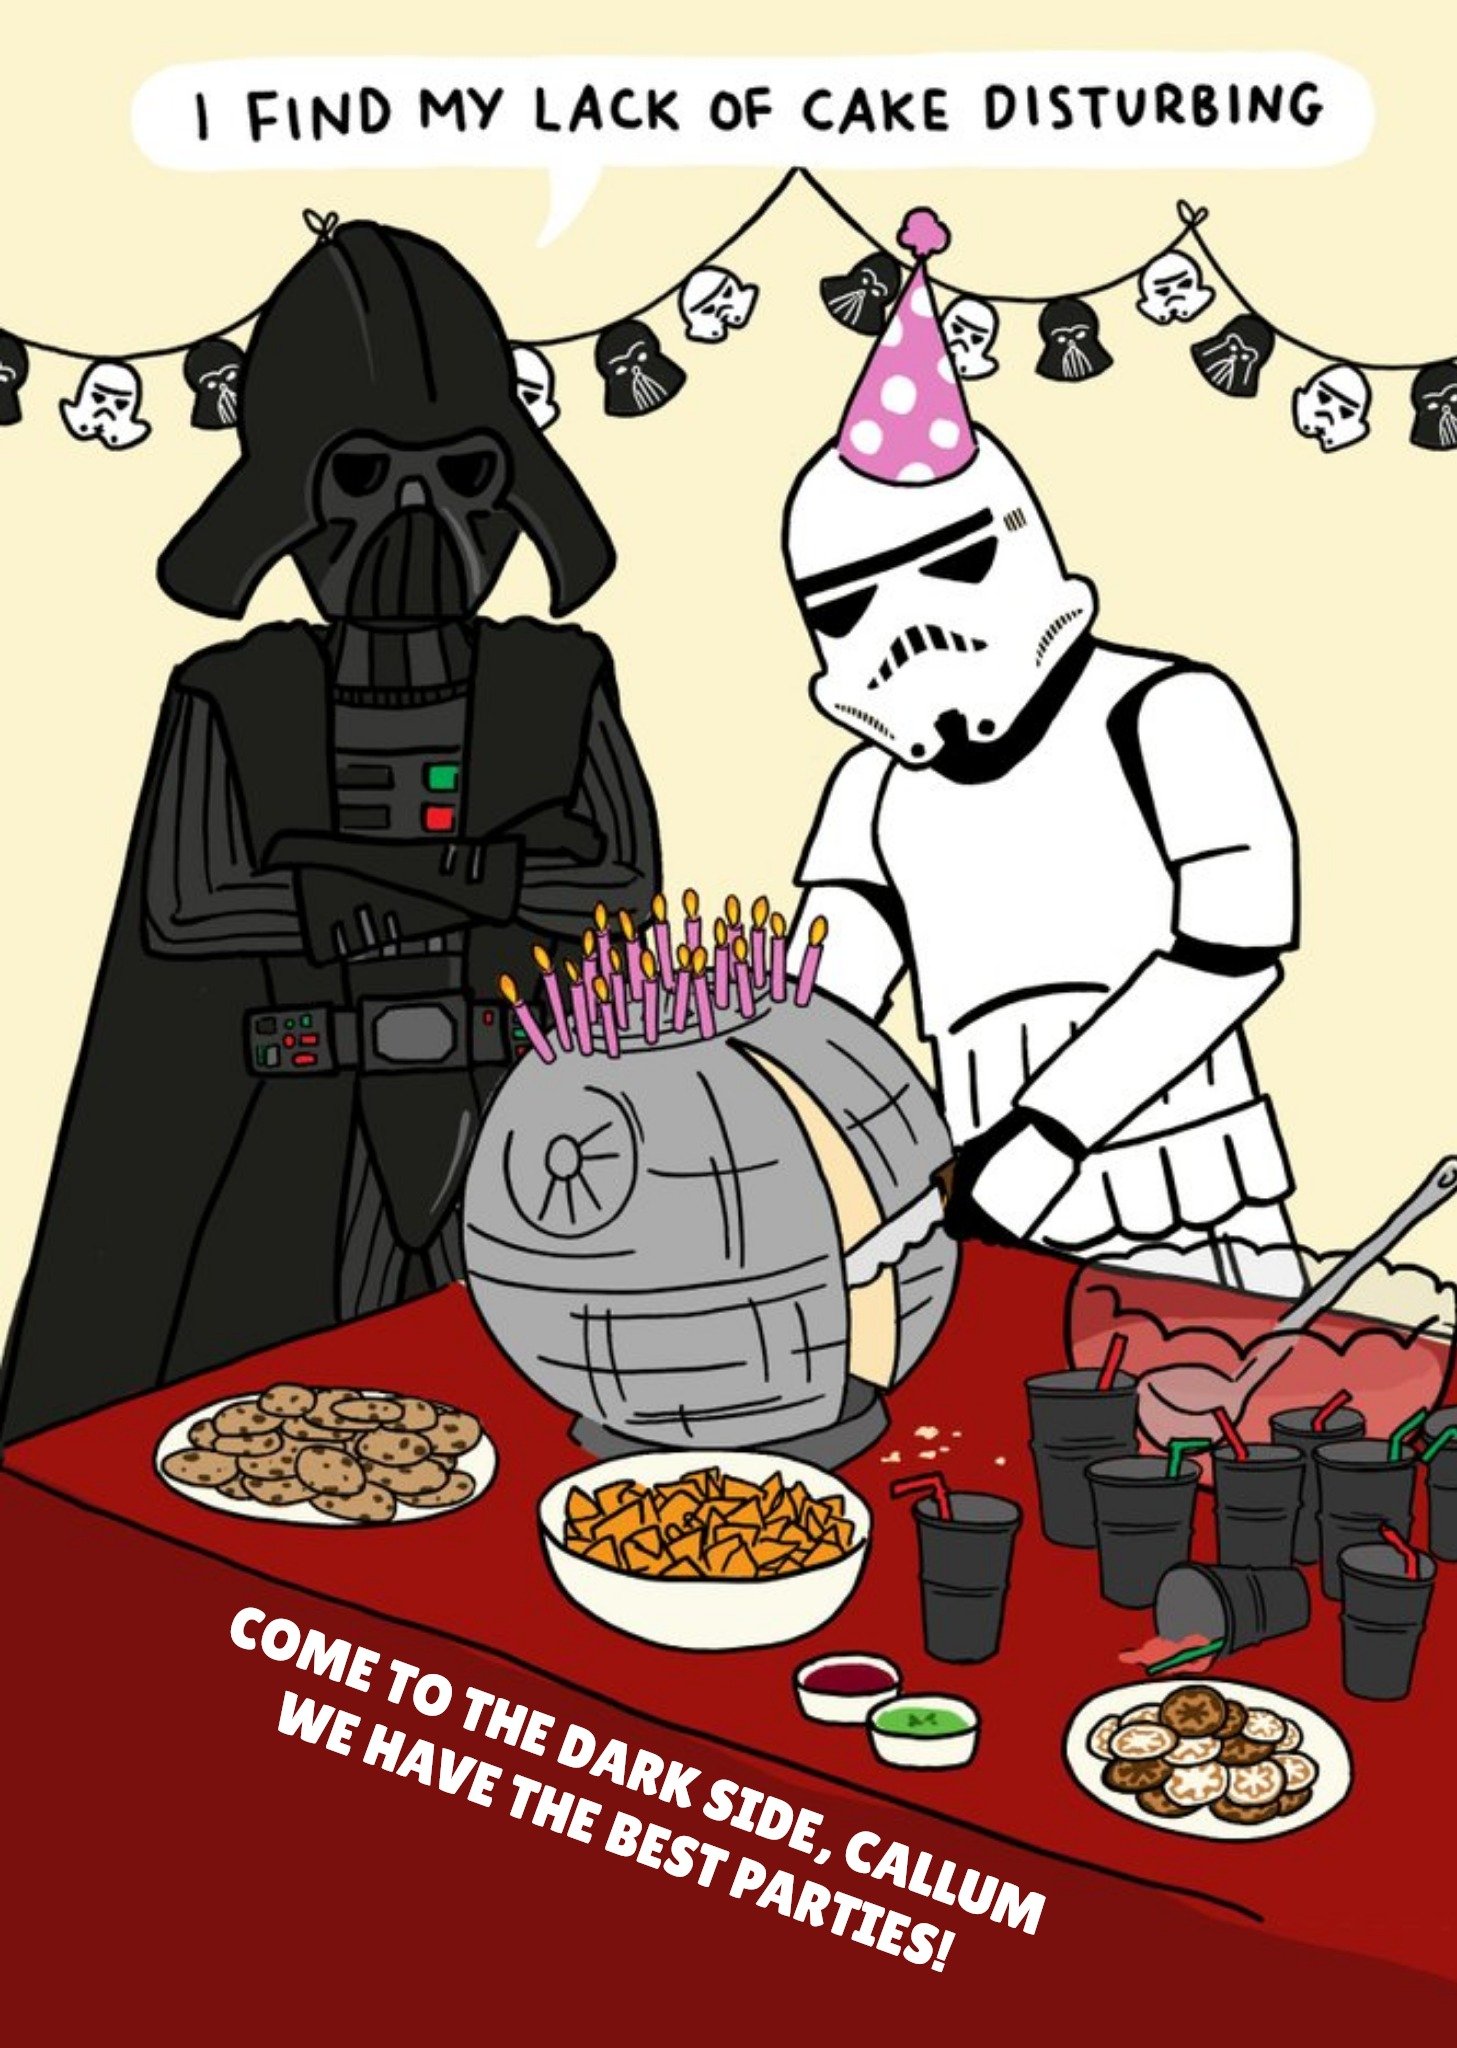 Disney Star Wars Funny Birthday Card - I Find My Lack Of Cake Disturbing Ecard